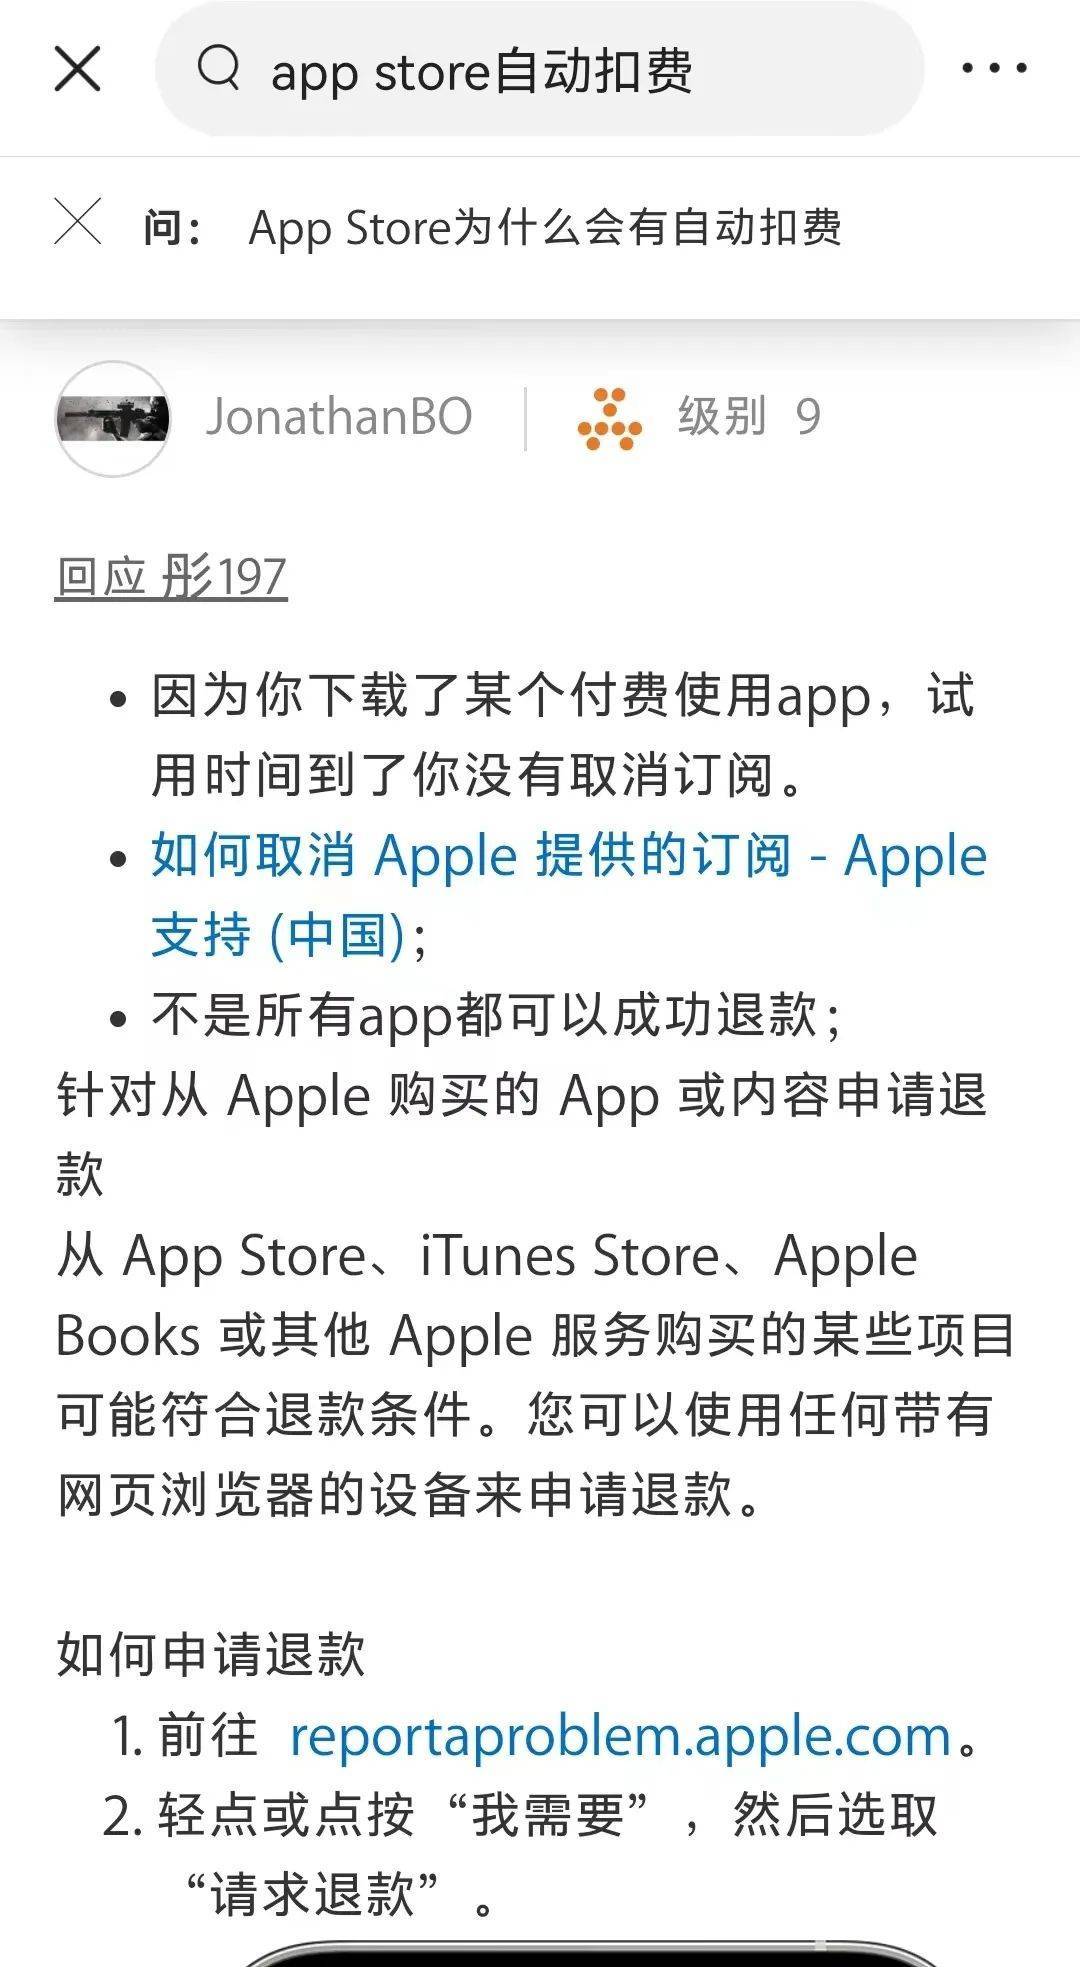 App Store五年自动扣费上千元！用户心太大，苹果藏太深？